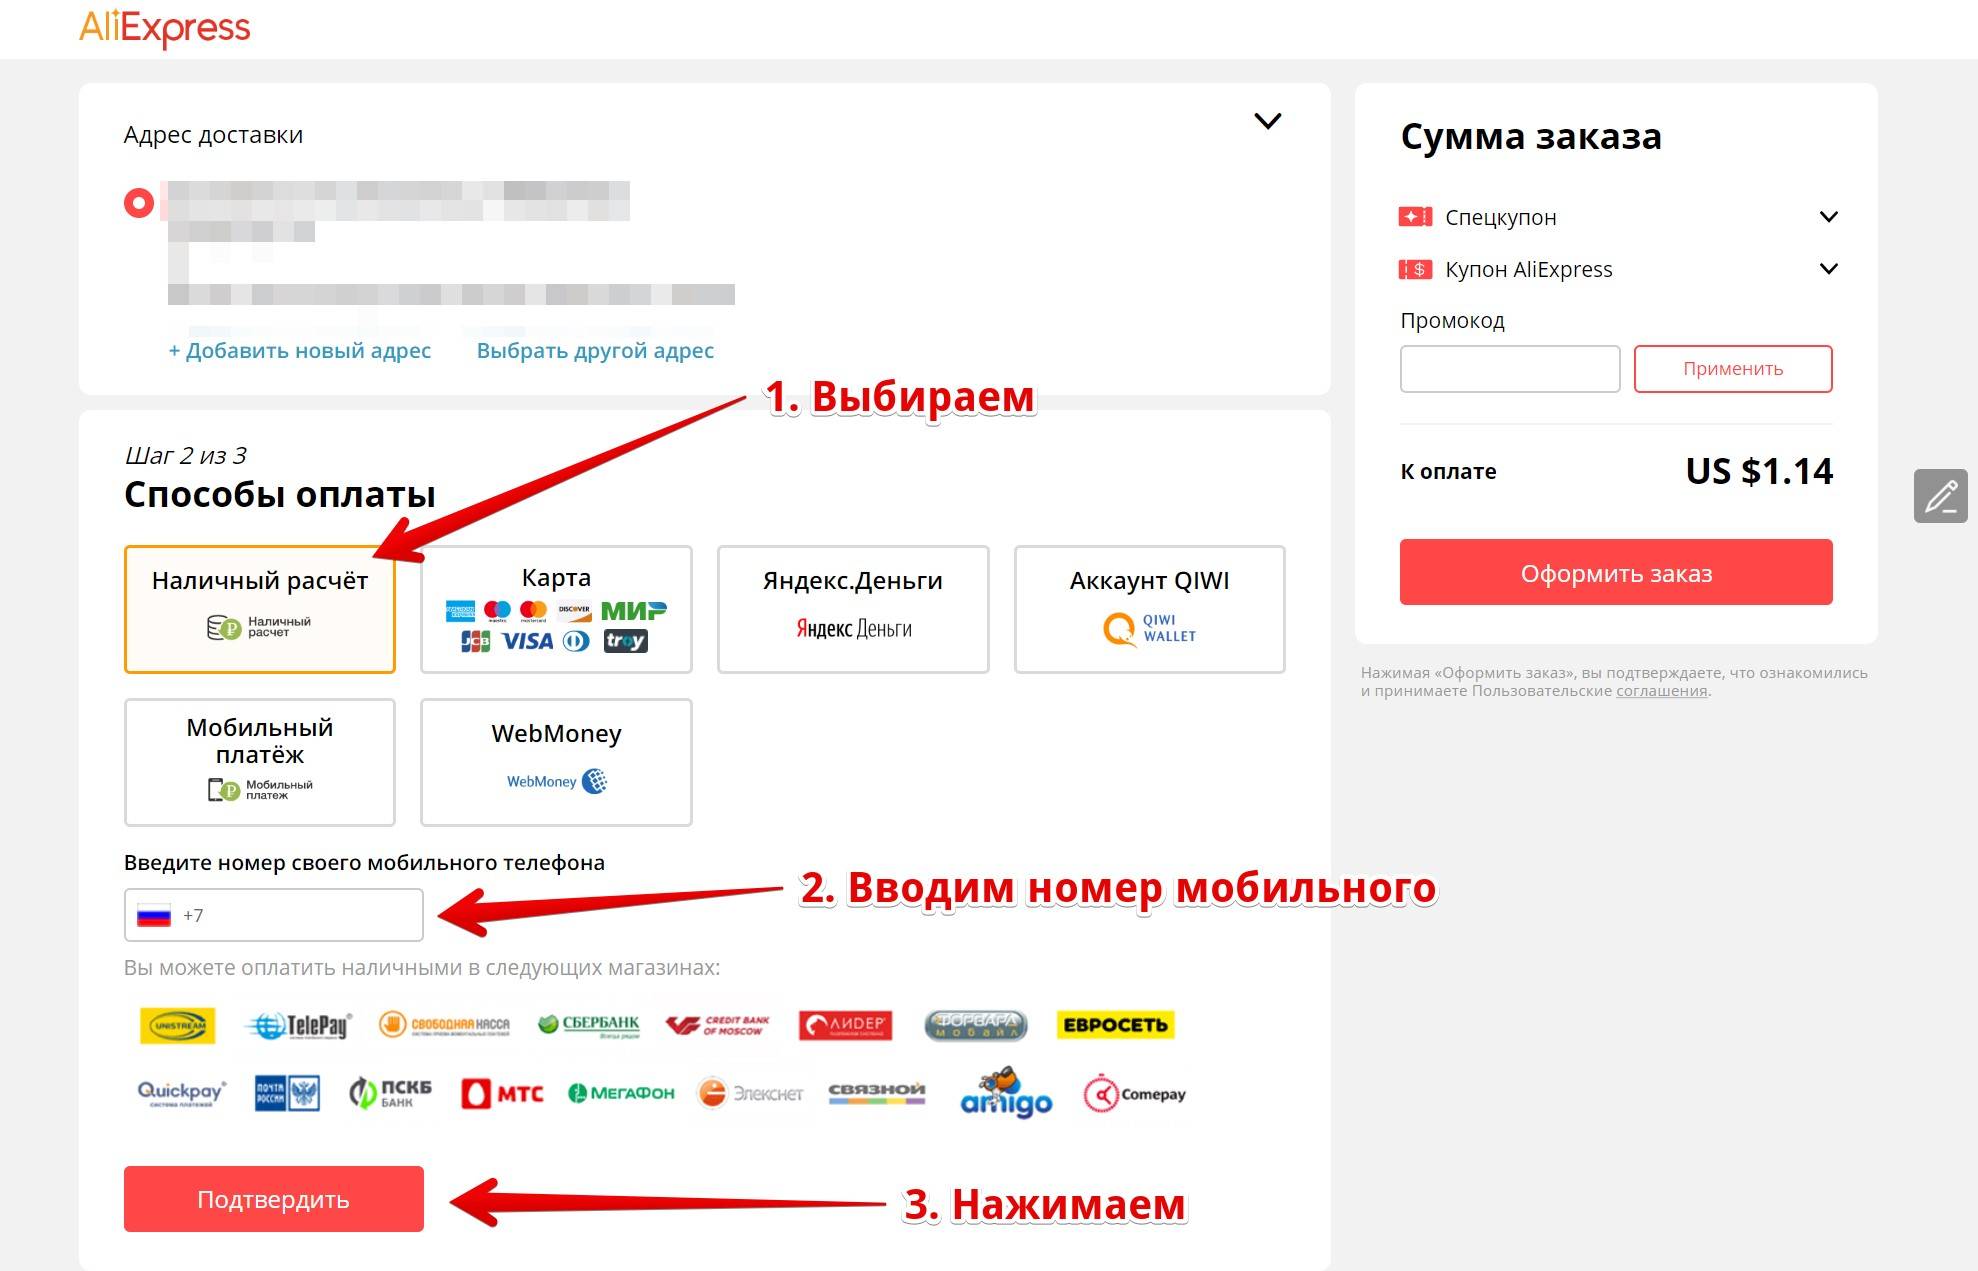 Как покупать на алиэкспресс пошаговая инструкция на русском